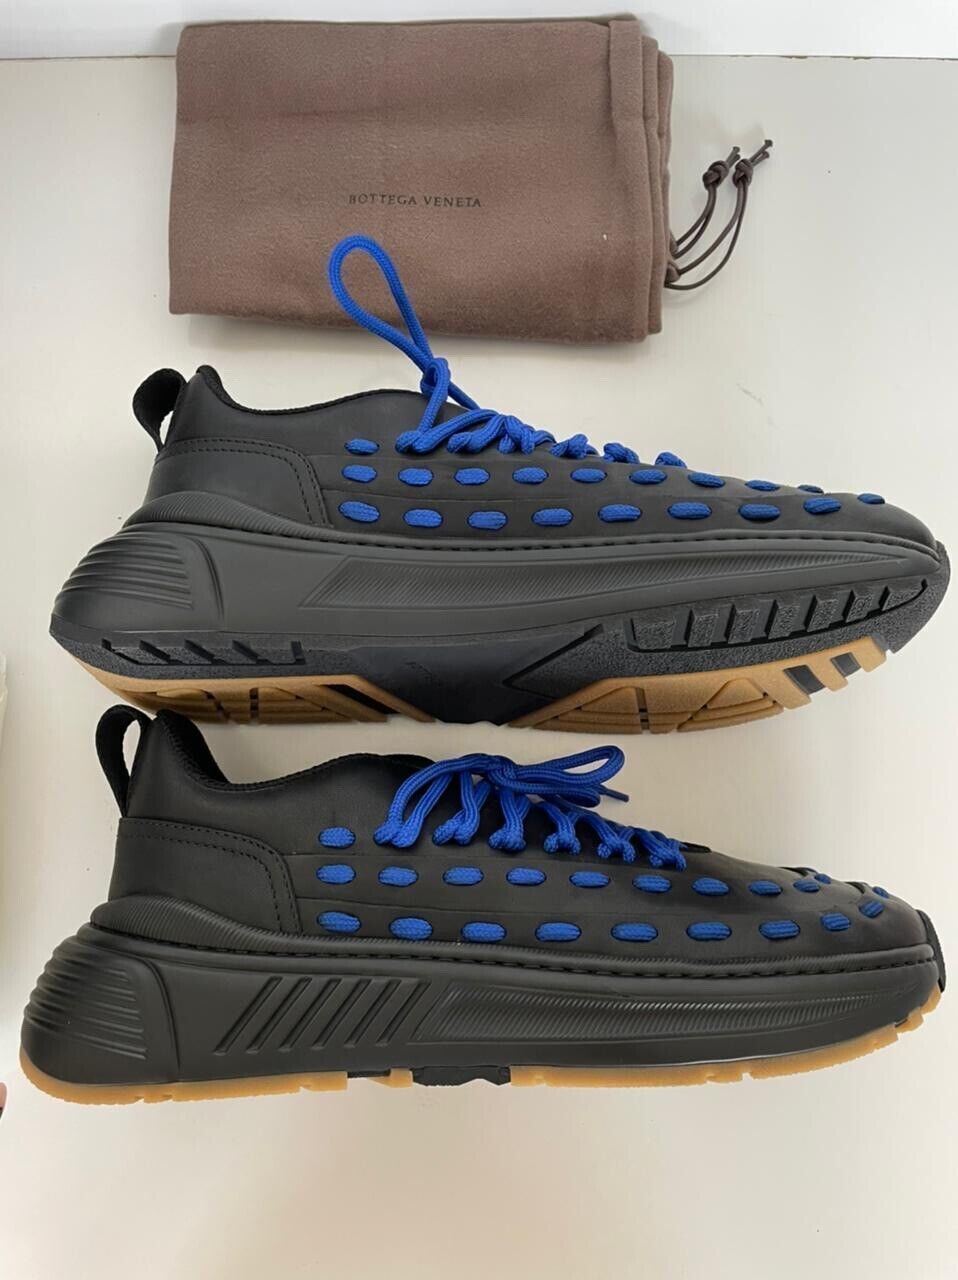 Мужские кожаные черные/синие кроссовки Bottega Veneta 950 долларов США 10,5 США 578305 1014 